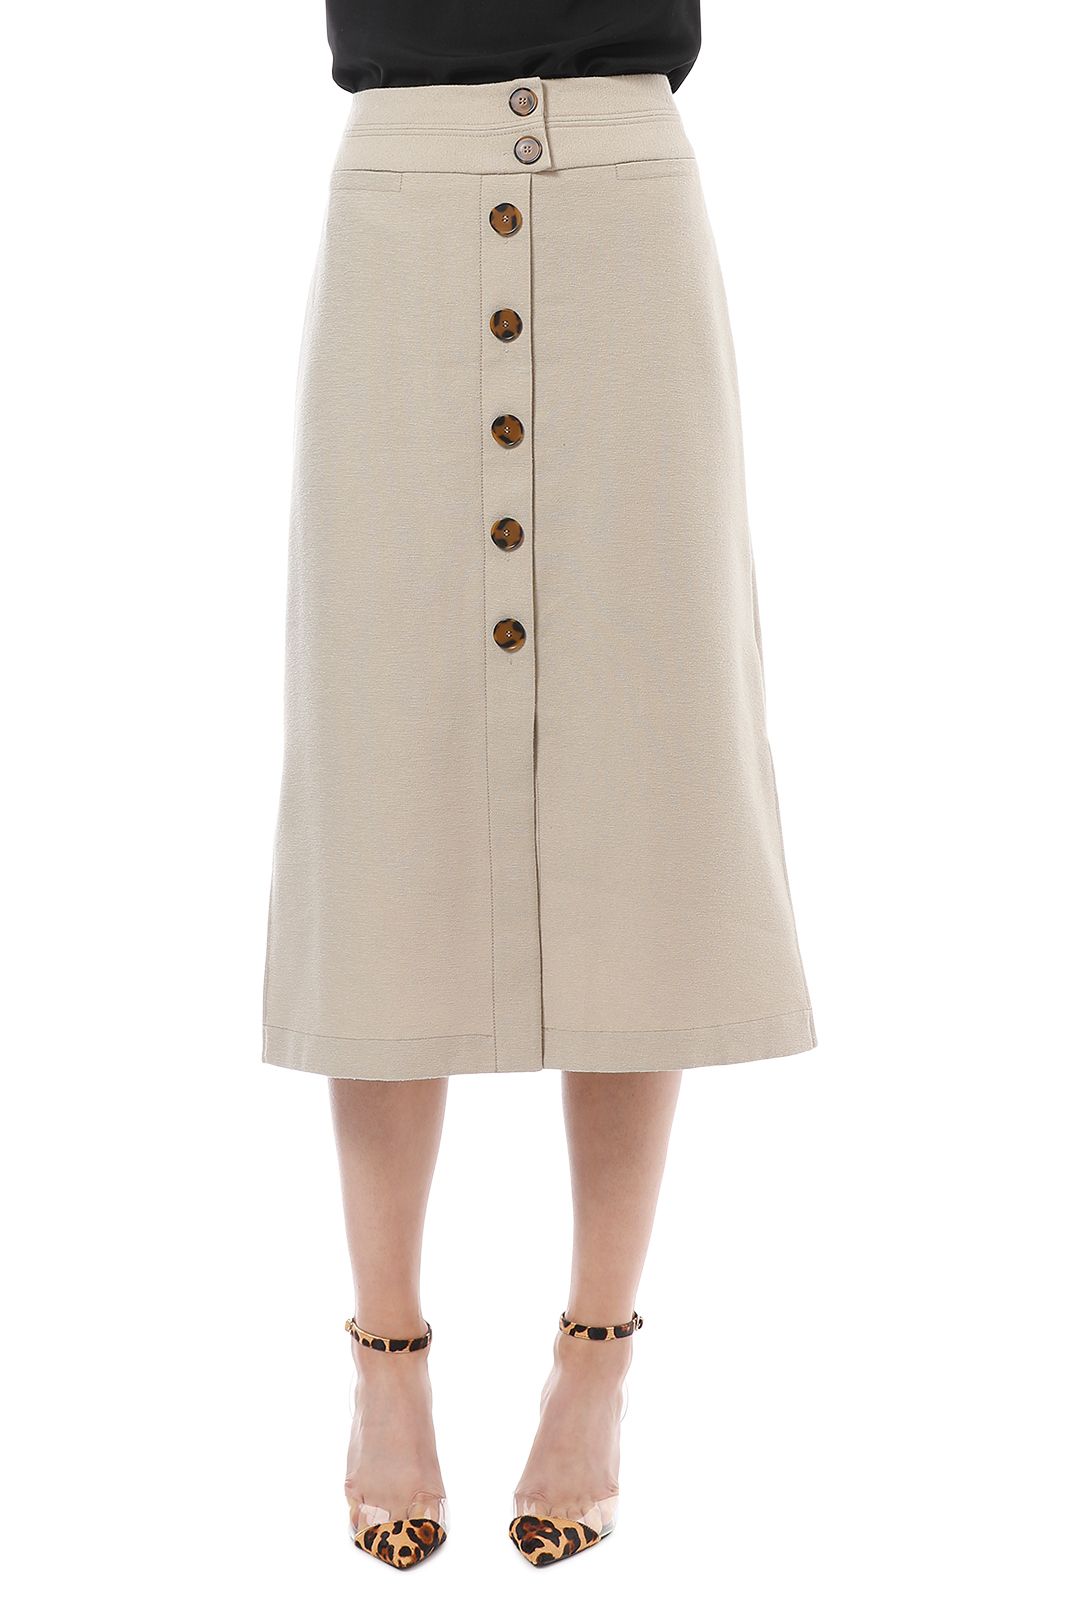 Veronika Maine - Textured Button Up Skirt - Beige - Front Detail